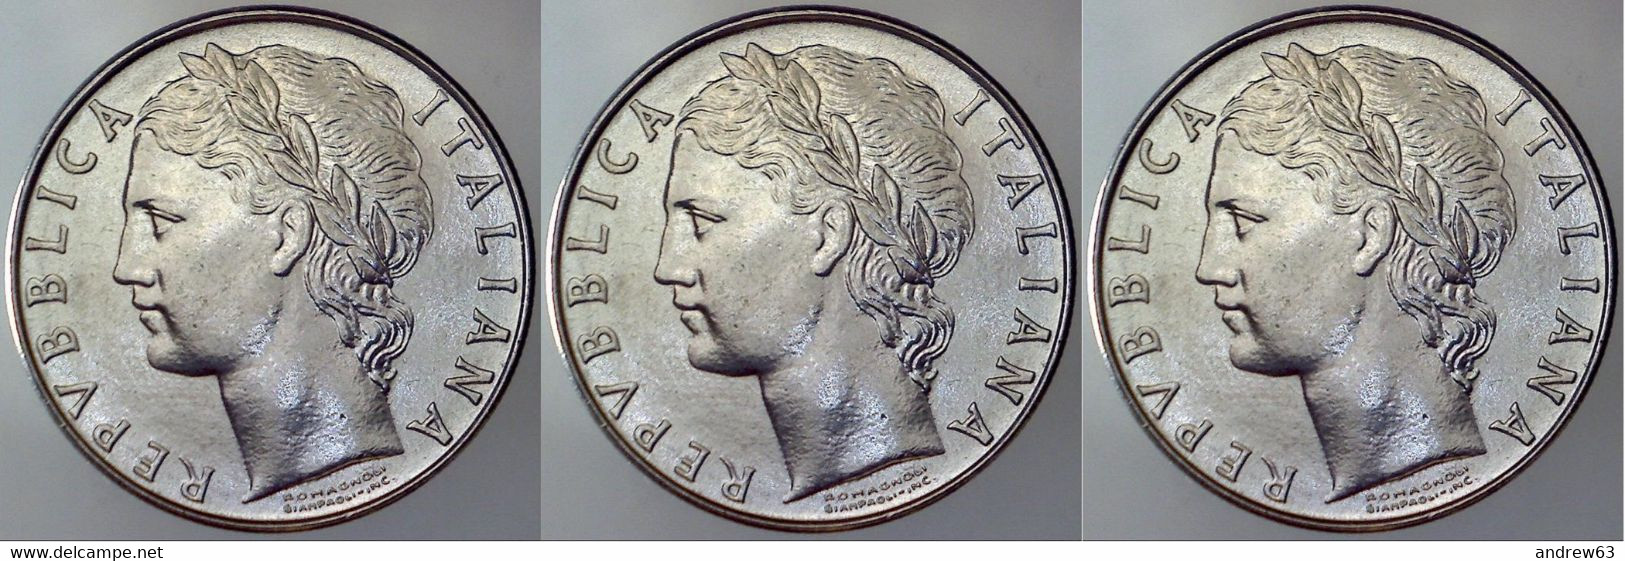 ITALIA - Lire 100 1976 - FDC/Unc Da Rotolino/from Roll 3 Monete/3 Coins - 100 Lire